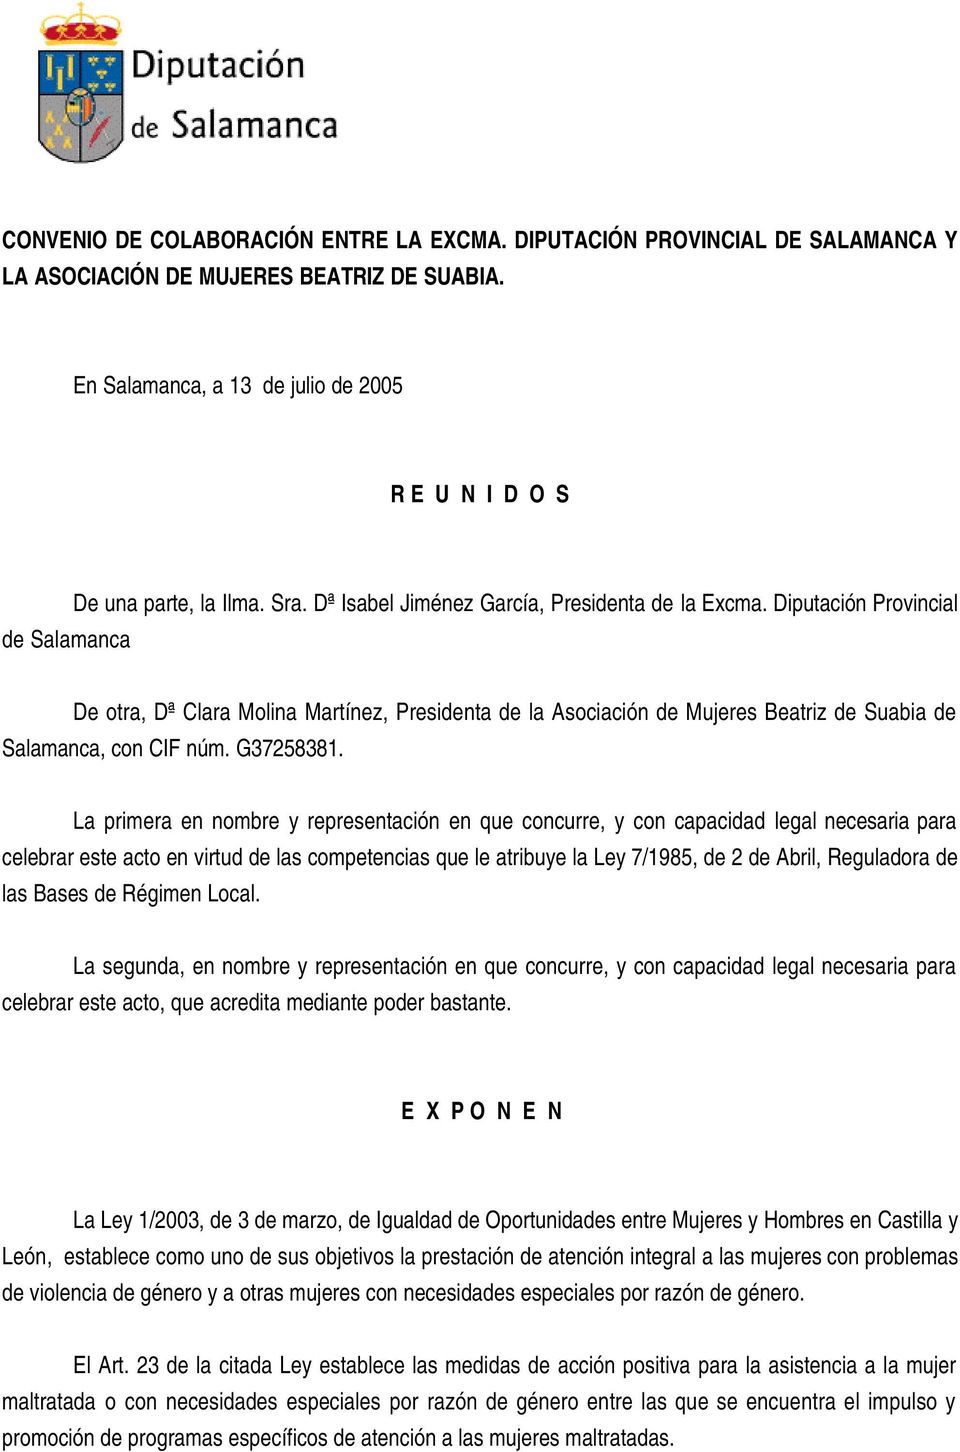 Diputación Provincial De otra, Dª Clara Molina Martínez, Presidenta de la Asociación de Mujeres Beatriz de Suabia de Salamanca, con CIF núm. G37258381.